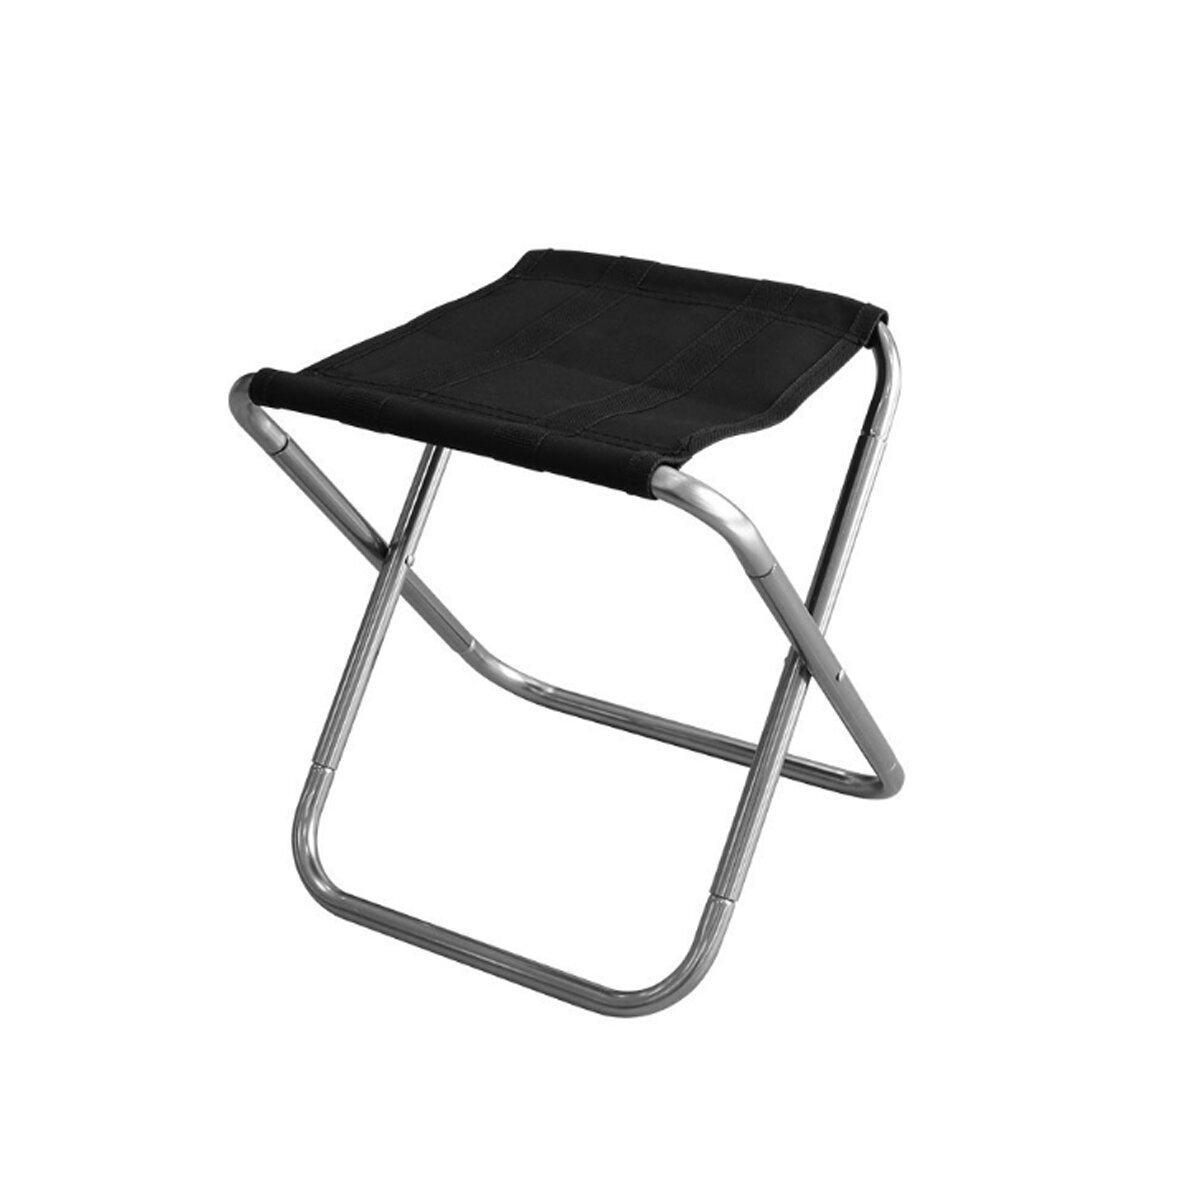 raagbare opvouwbare stoel voor buiten kamperen, picknick, BBQ. Maximale belasting 100 kg.